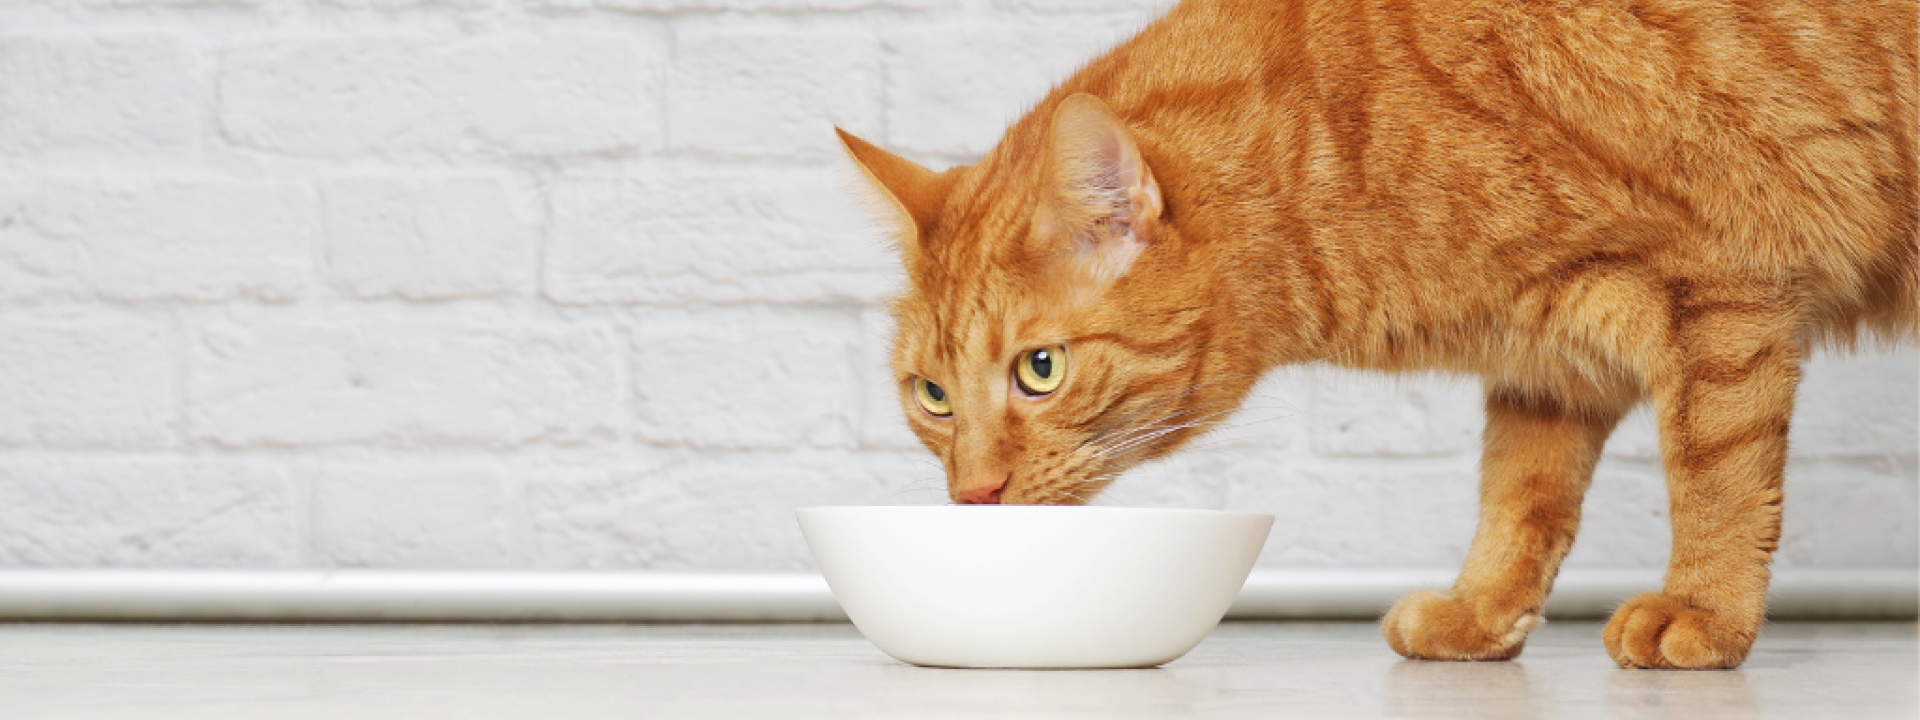 Ginger cat eating